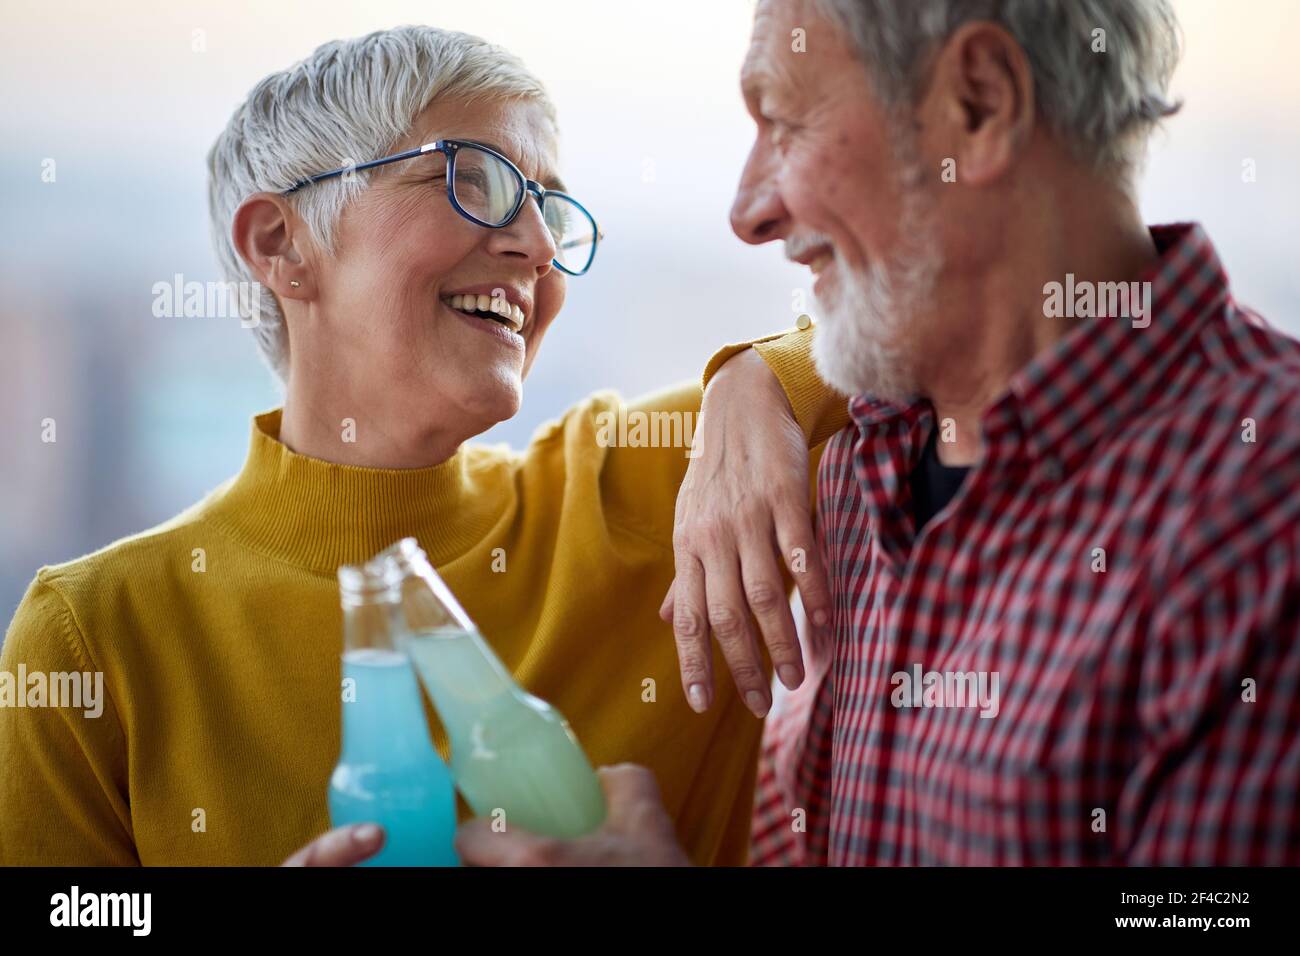 Ein glückliches älteres Paar genießt einen Drink und verbringt Zeit zusammen in einer fröhlichen Atmosphäre. Ehepartner, ältere Menschen, zusammen Stockfoto